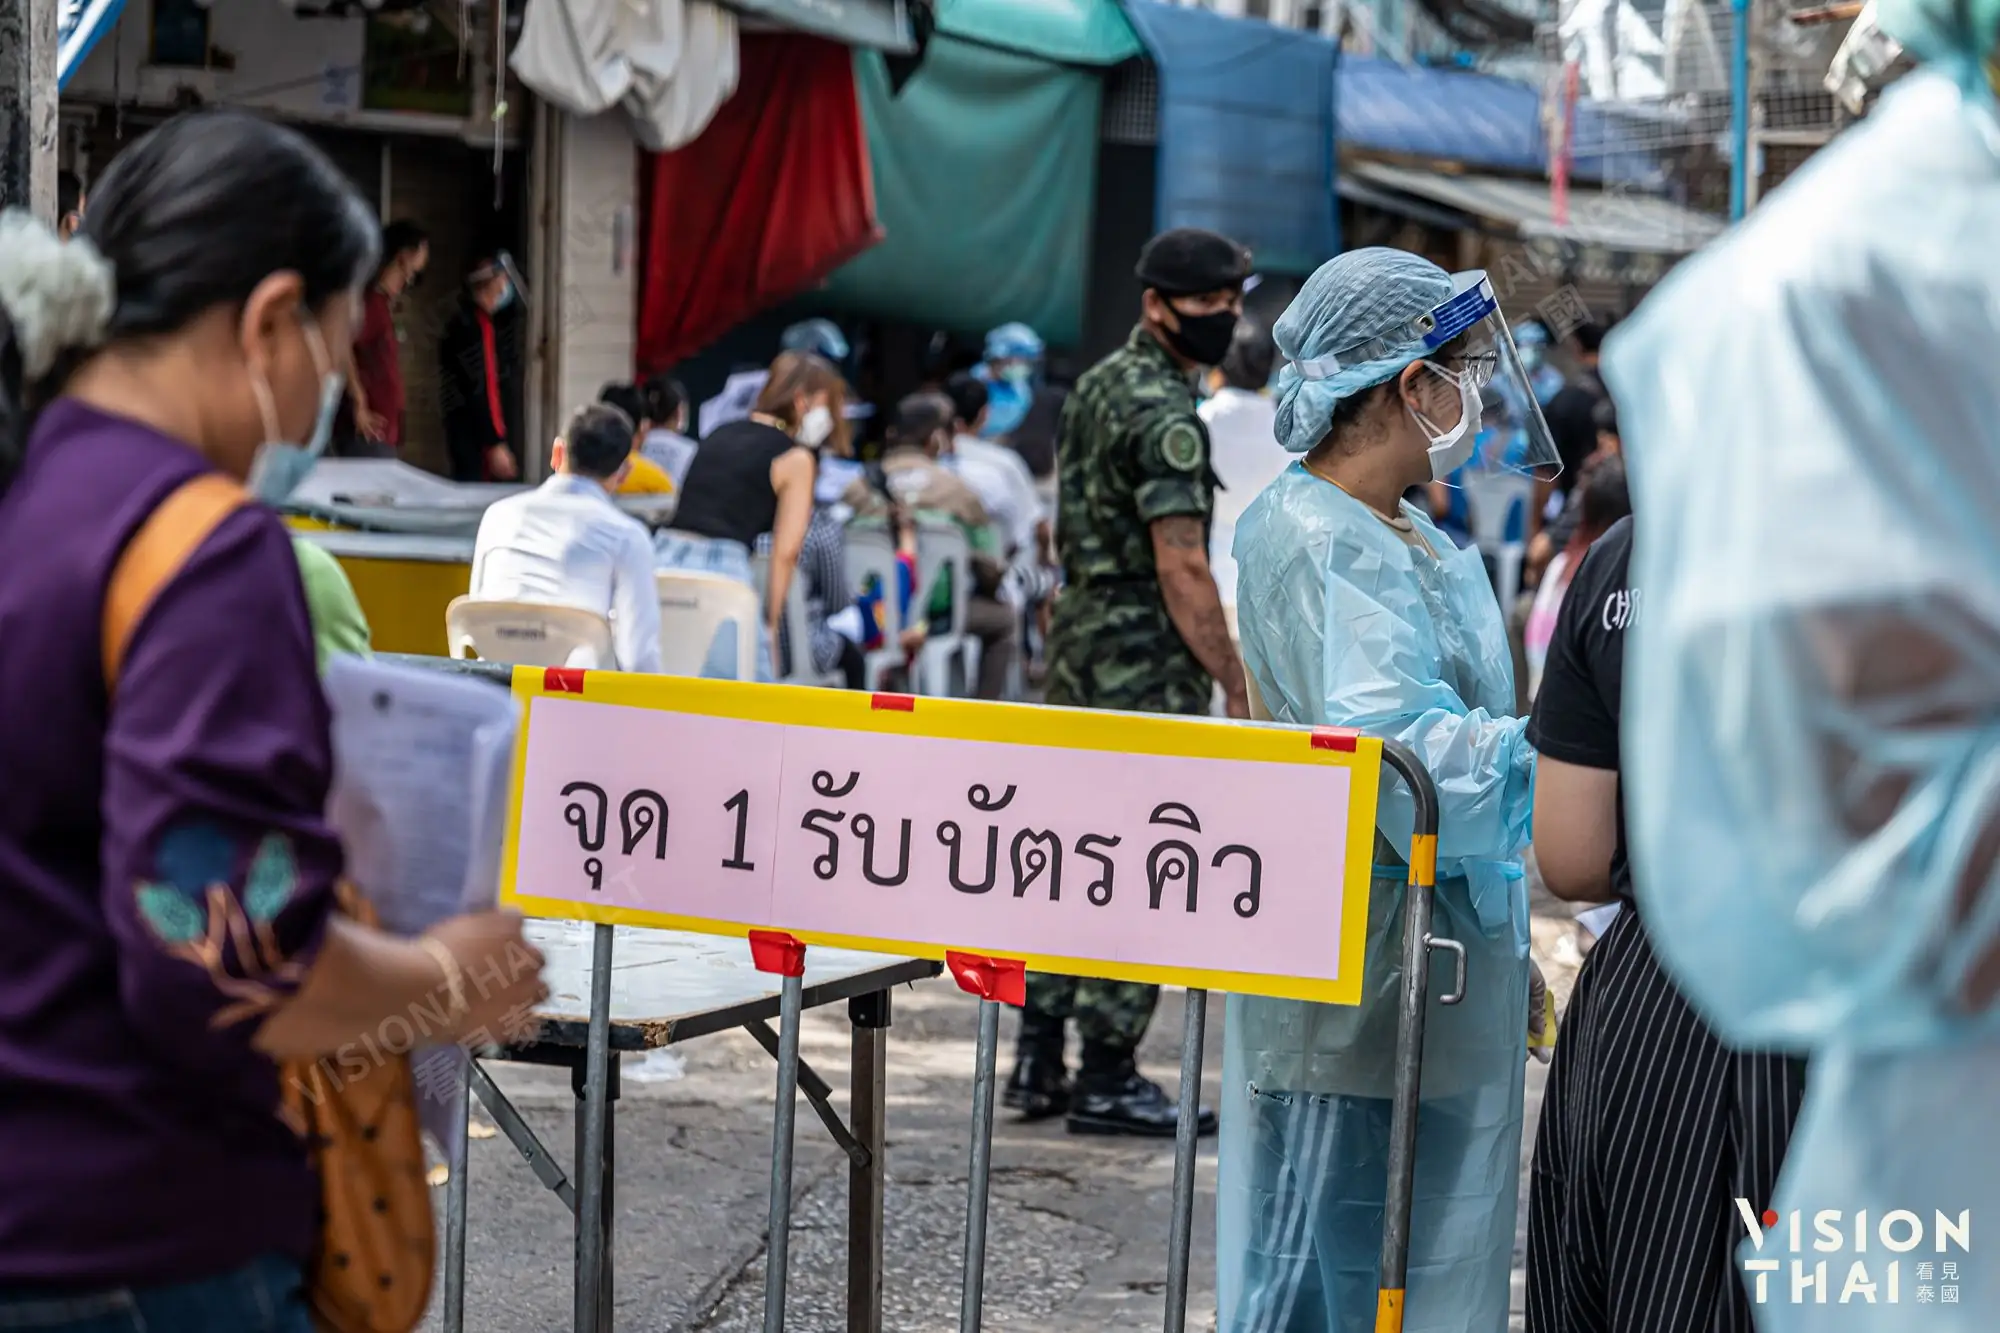  曼谷商圈市场传疫情 今起大规模筛检（图片来源：VISION THAI看见泰国）